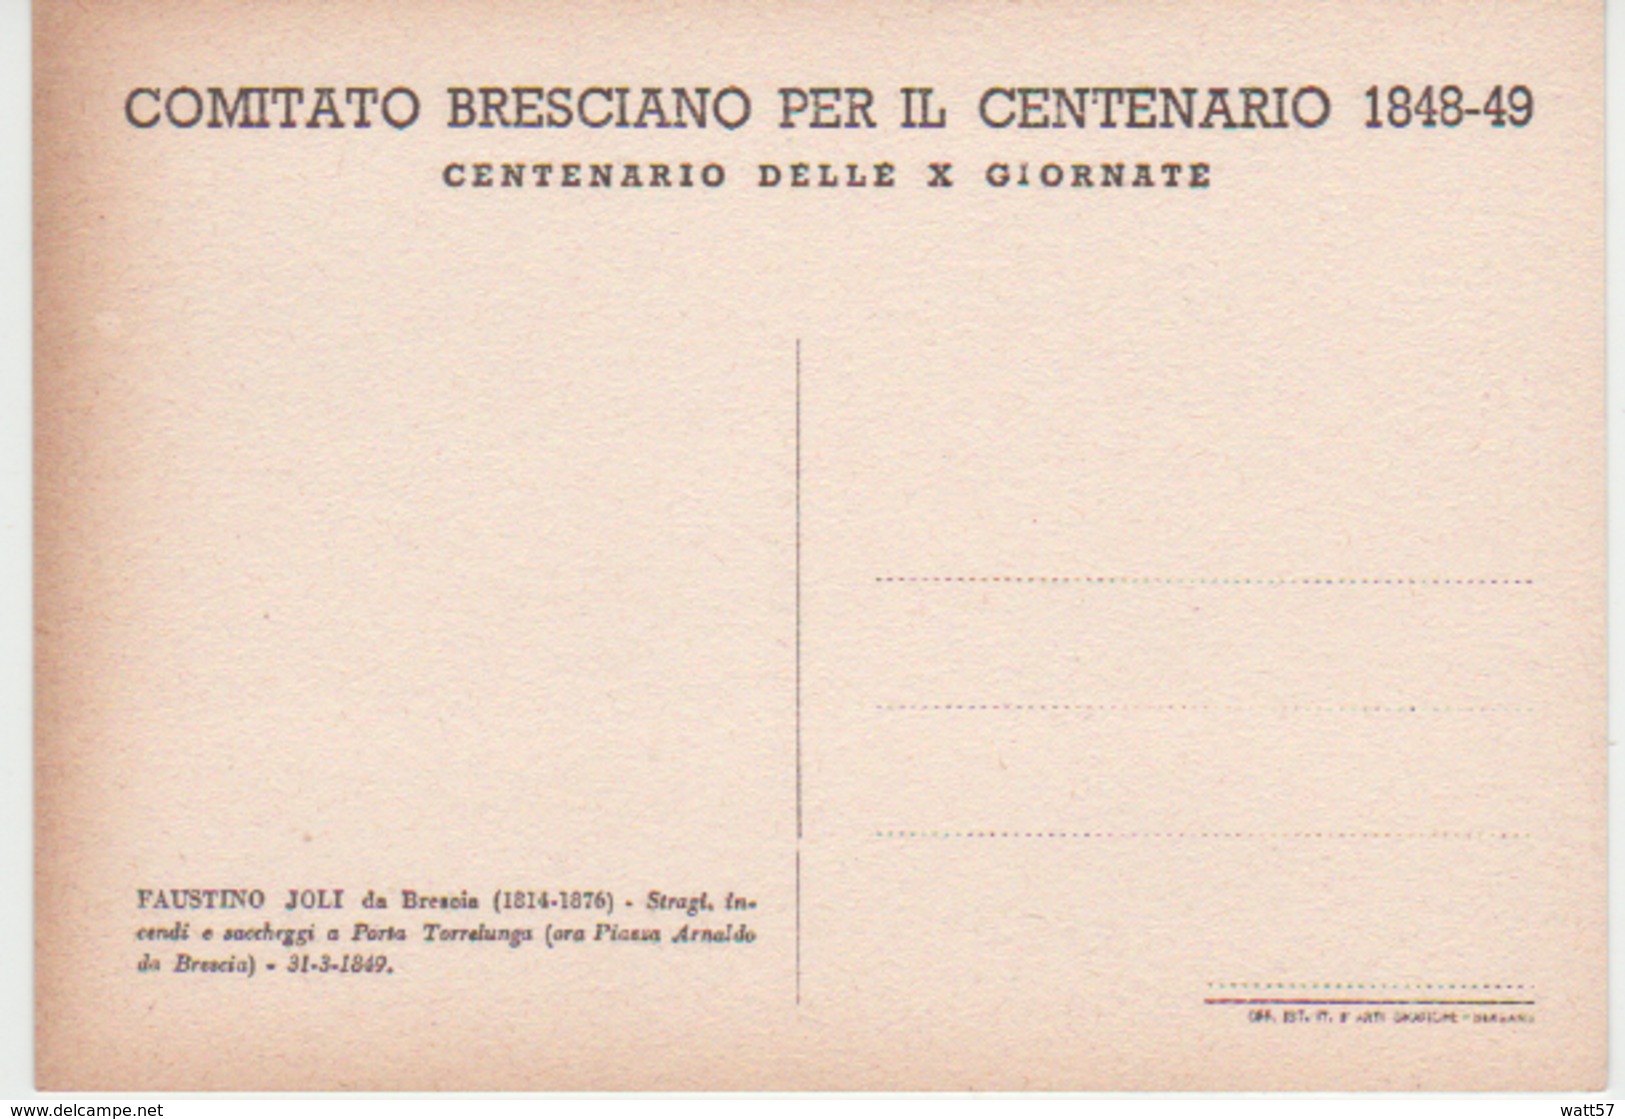 Comitato Bresciano Per Il Centenario 1848-49